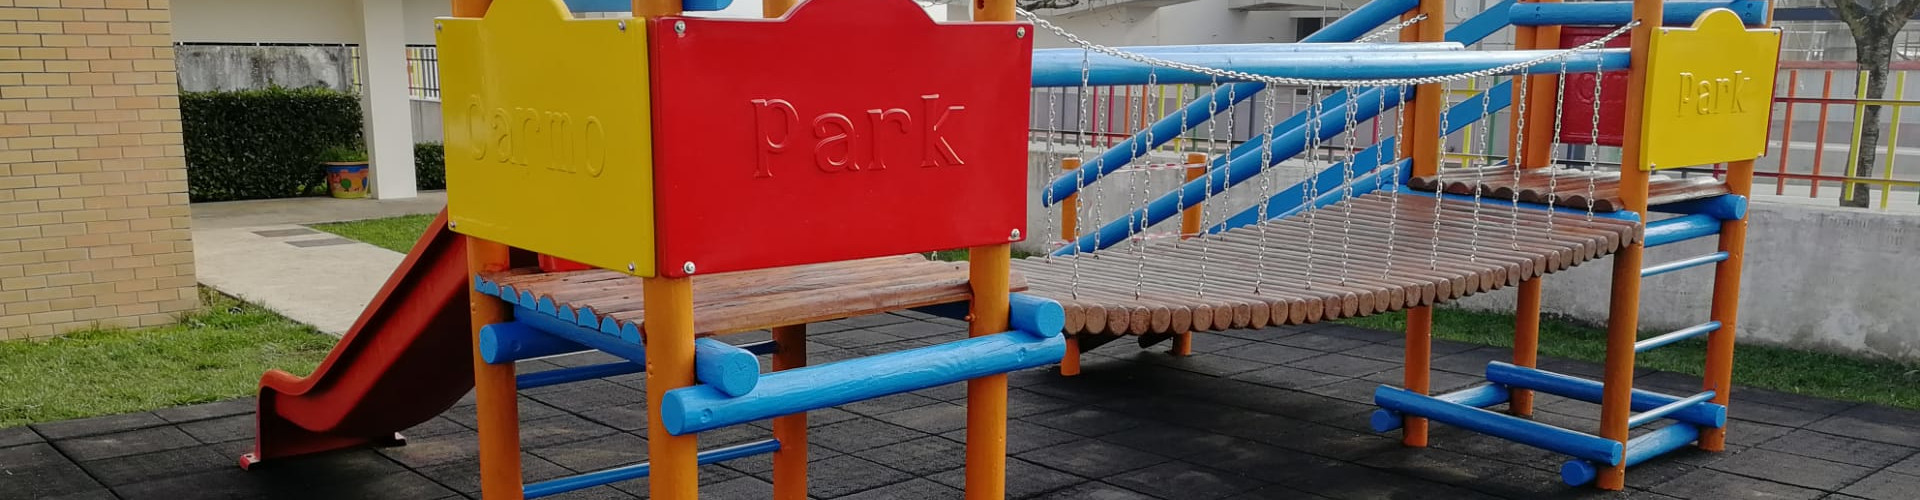 Parque infantil em madeira tratada